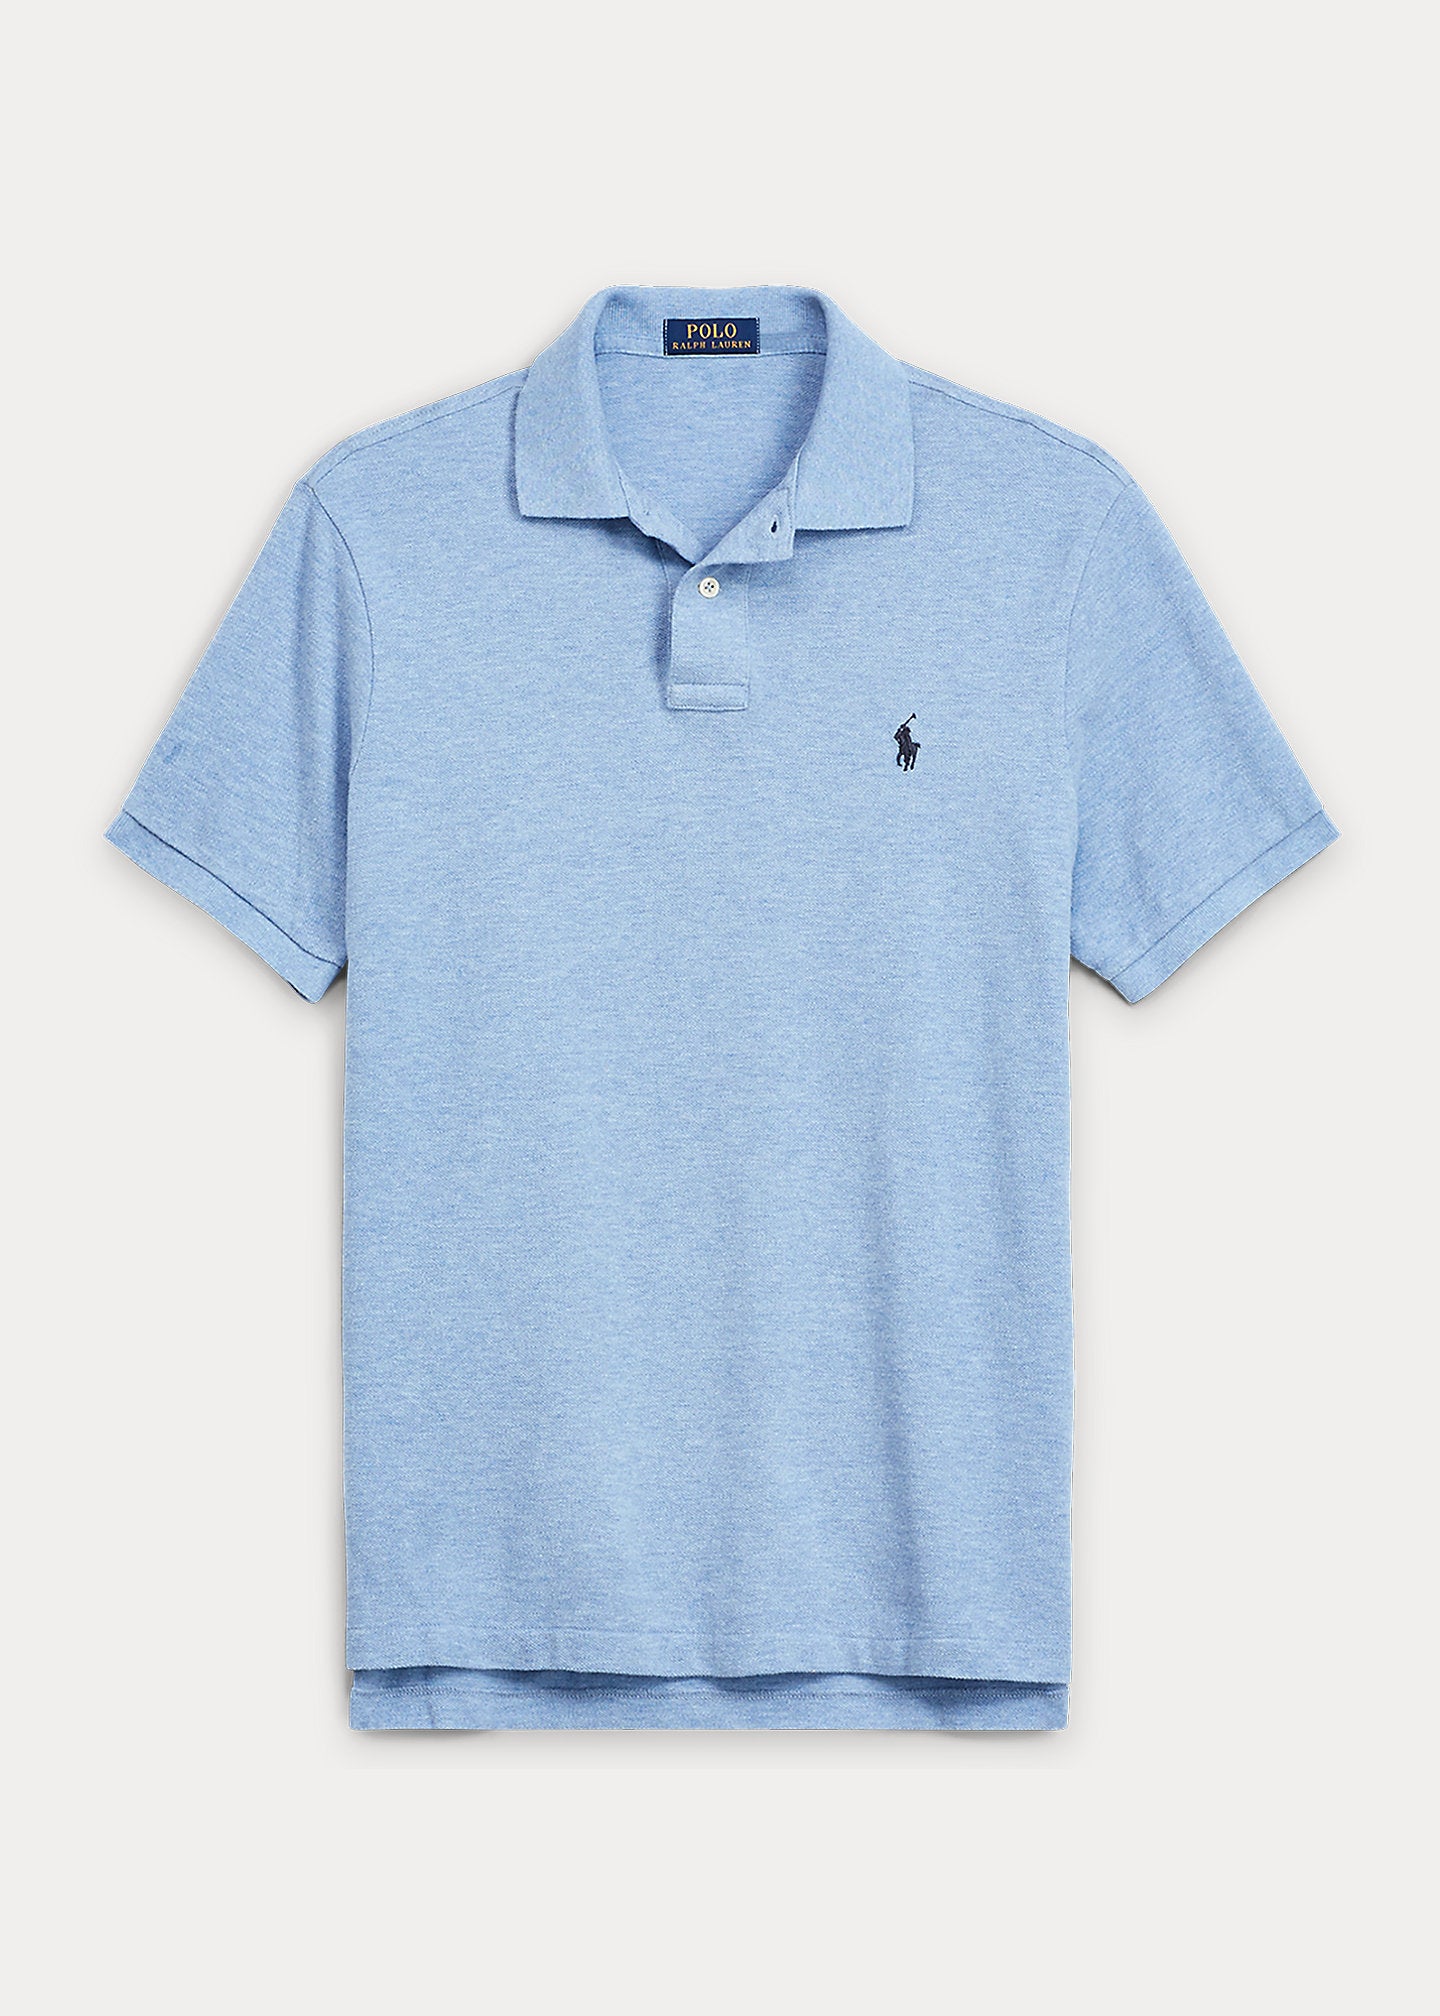 Polo pour homme Ralph Lauren ajusté bleu | Georgespaul